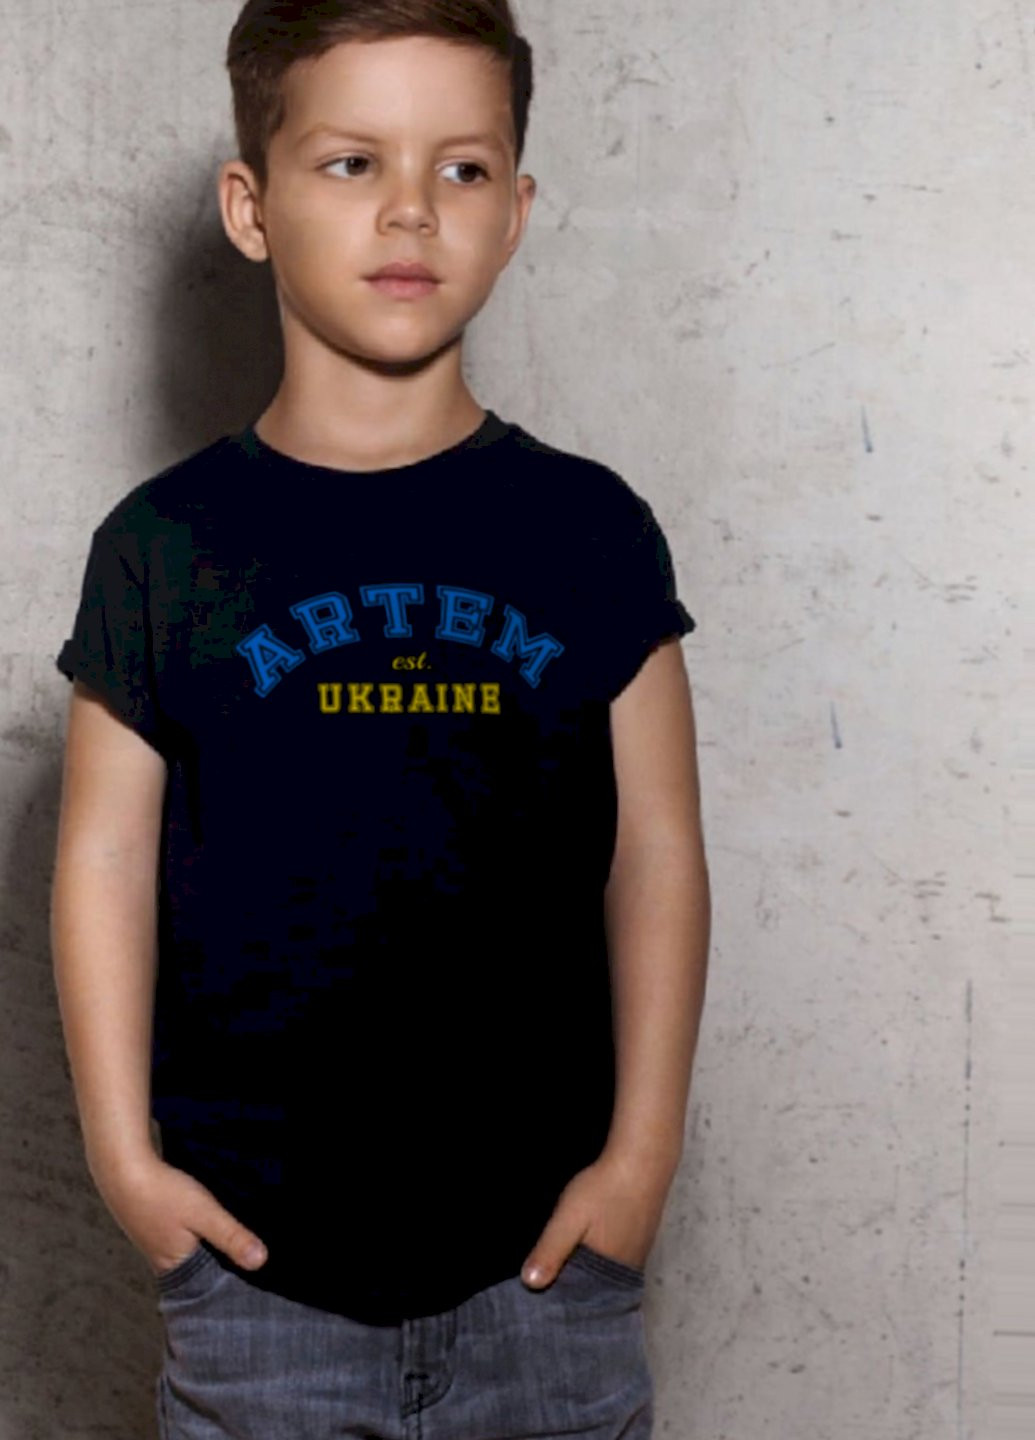 Черная демисезонная футболка детская патриотическая черная "артем est.ukraine" Young&Free